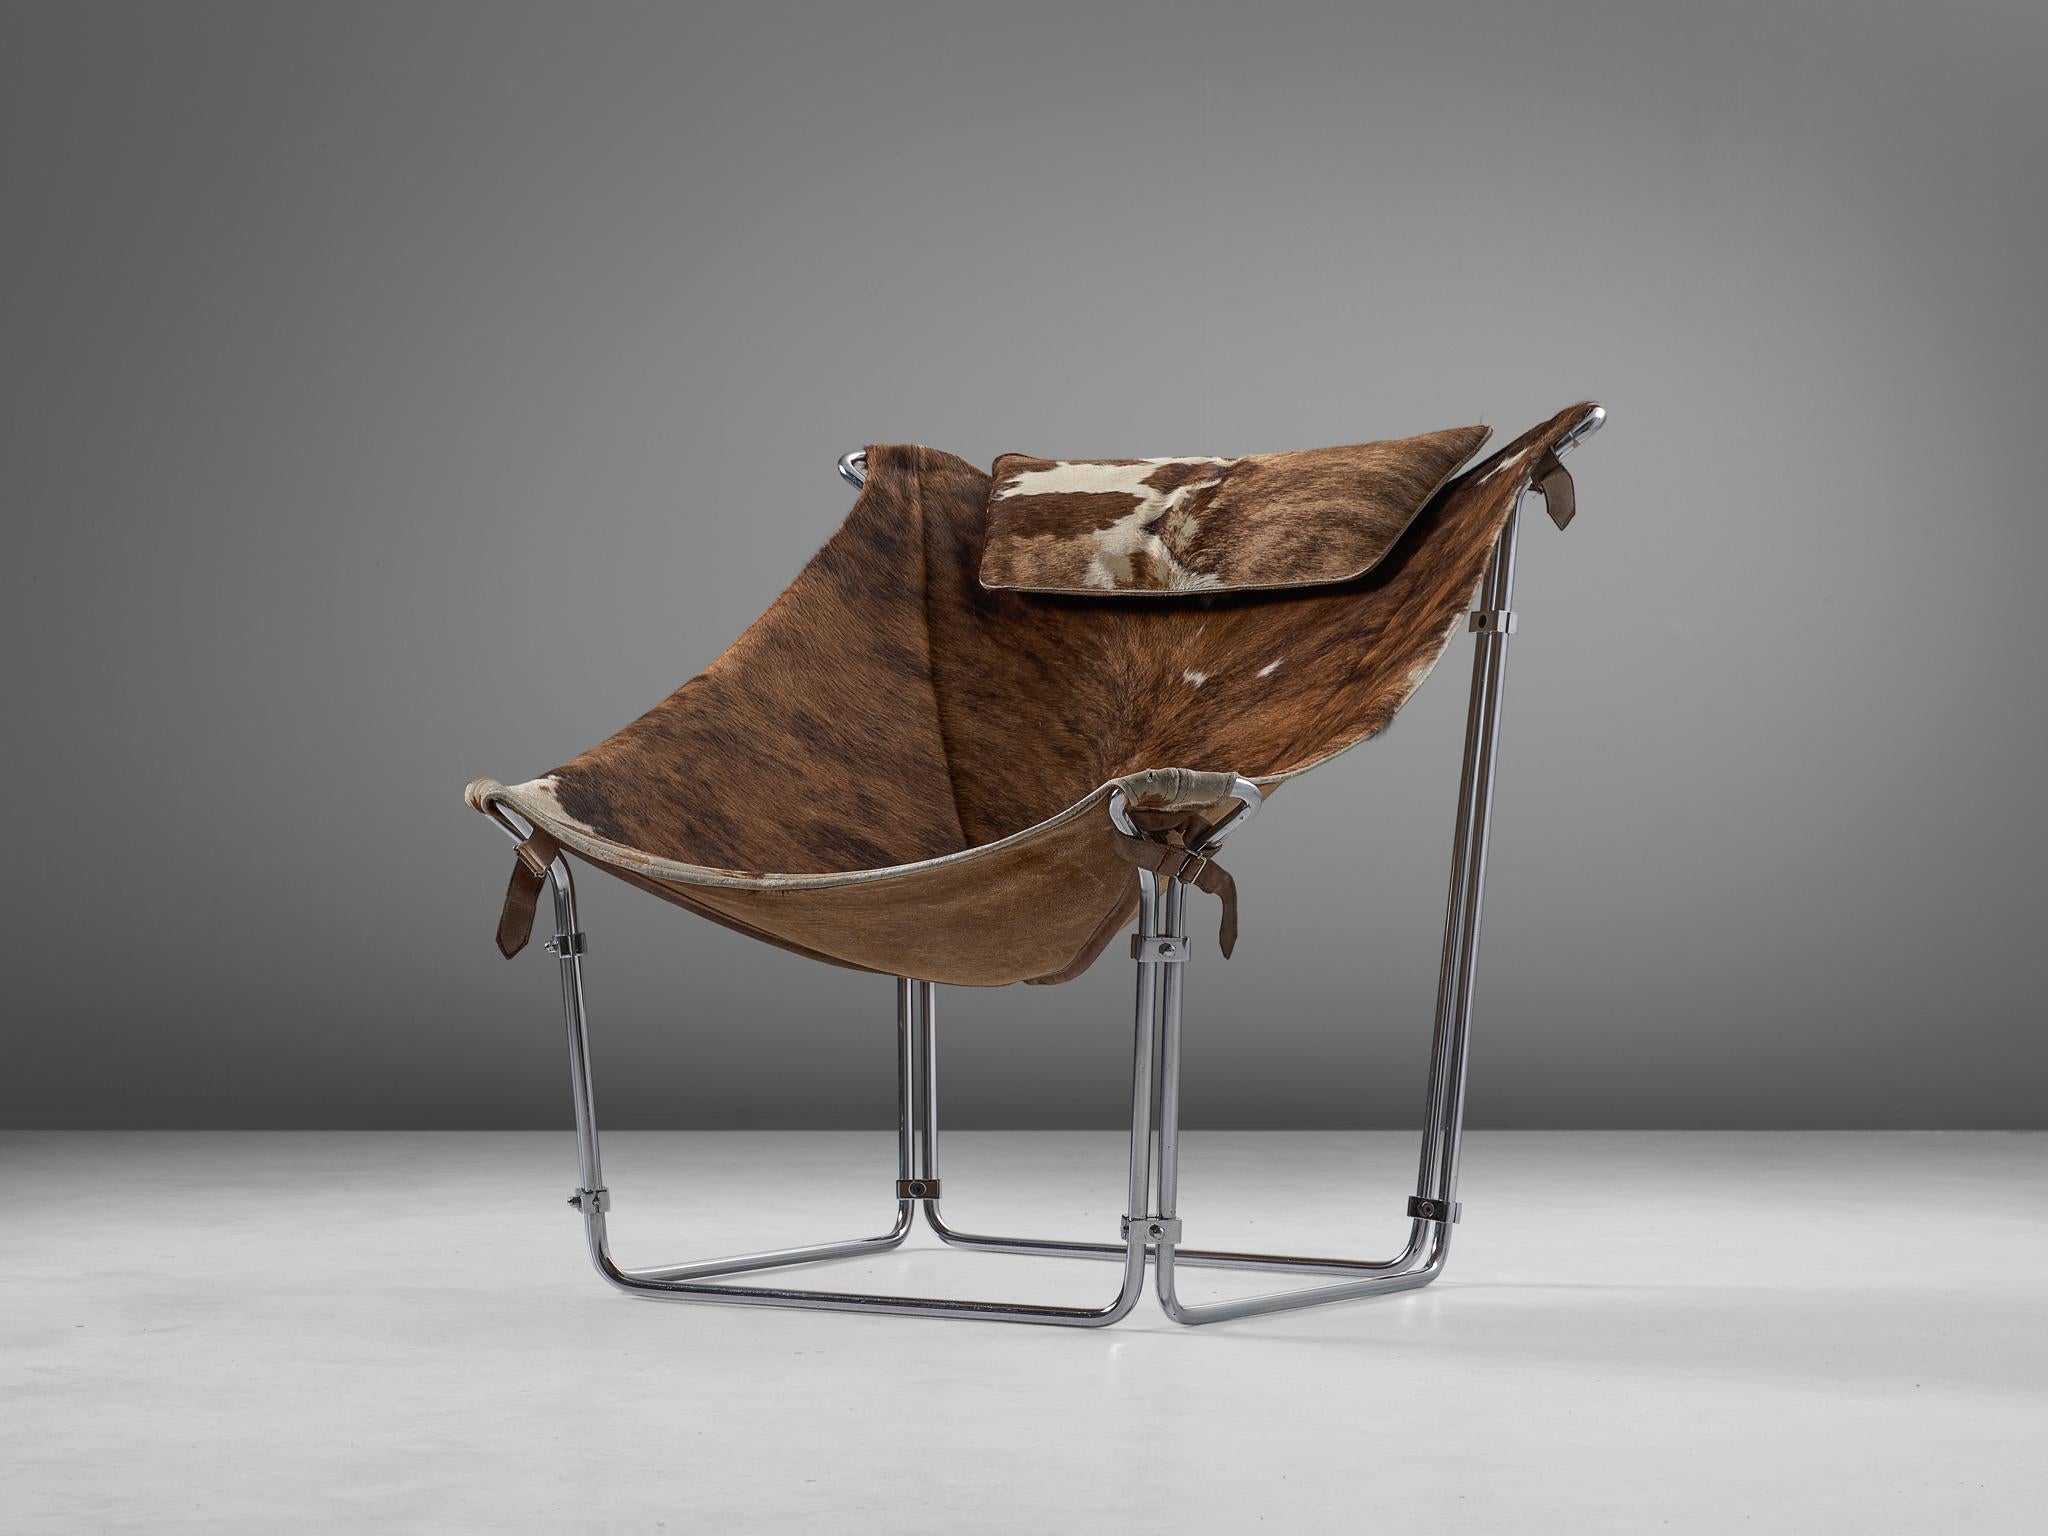 Kwok Hoi Chan pour Steiner, chaise longue 'Buffalo', peau de vache, acier tubulaire, France, 1969

Cette extraordinaire chaise longue de Kwok Hoi Chan est produite par Steiner, Paris. Ce qui caractérise ce design, c'est le cadre en acier tubulaire